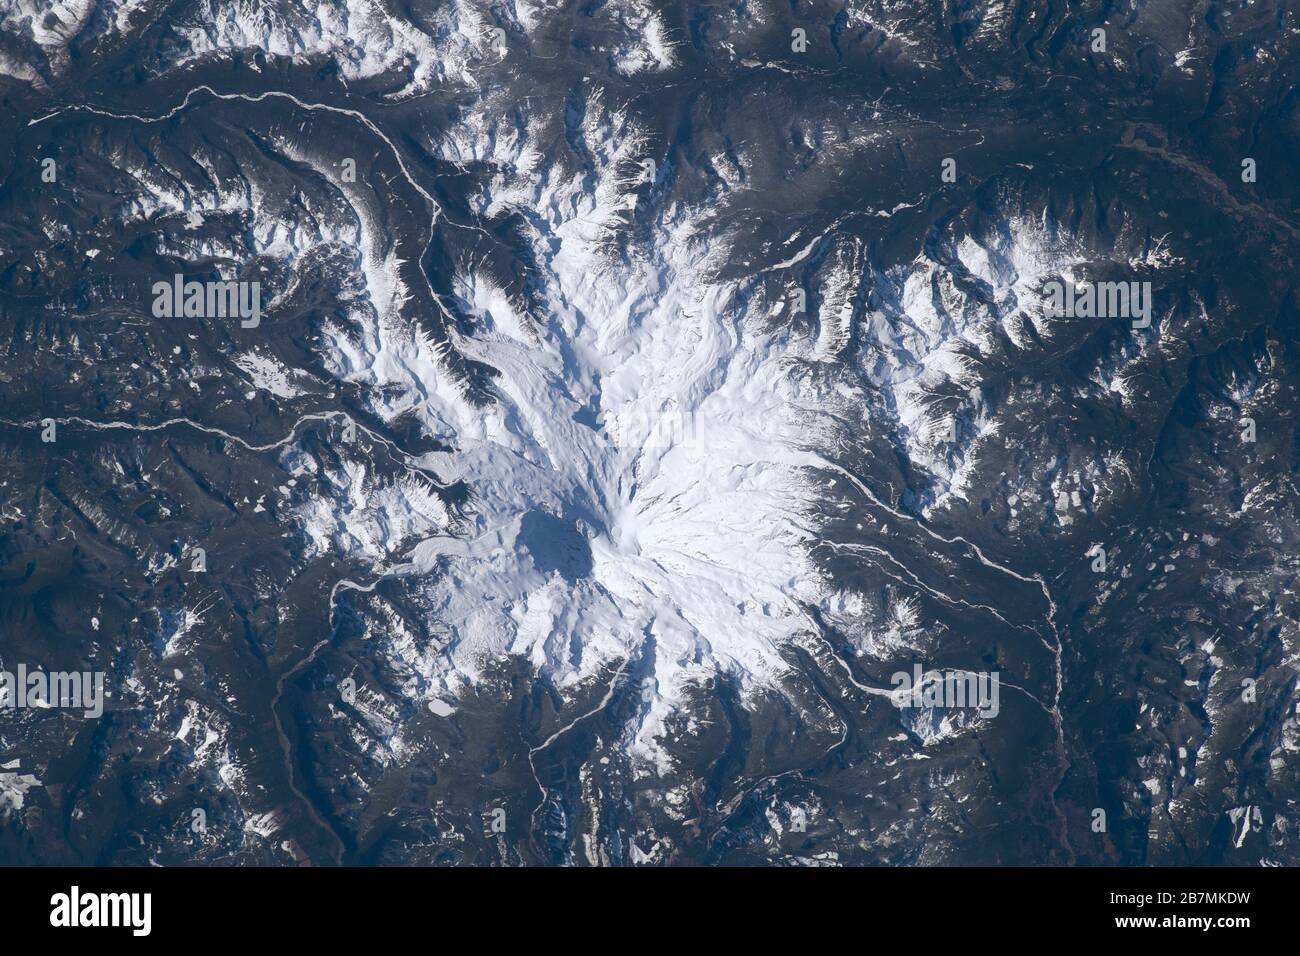 MOUNT RAINIER, États-Unis - 19 février 2020 - le mont Rainier est vu de la Station spatiale internationale comme il a orbité à 266 miles au-dessus de Washington State USA Banque D'Images